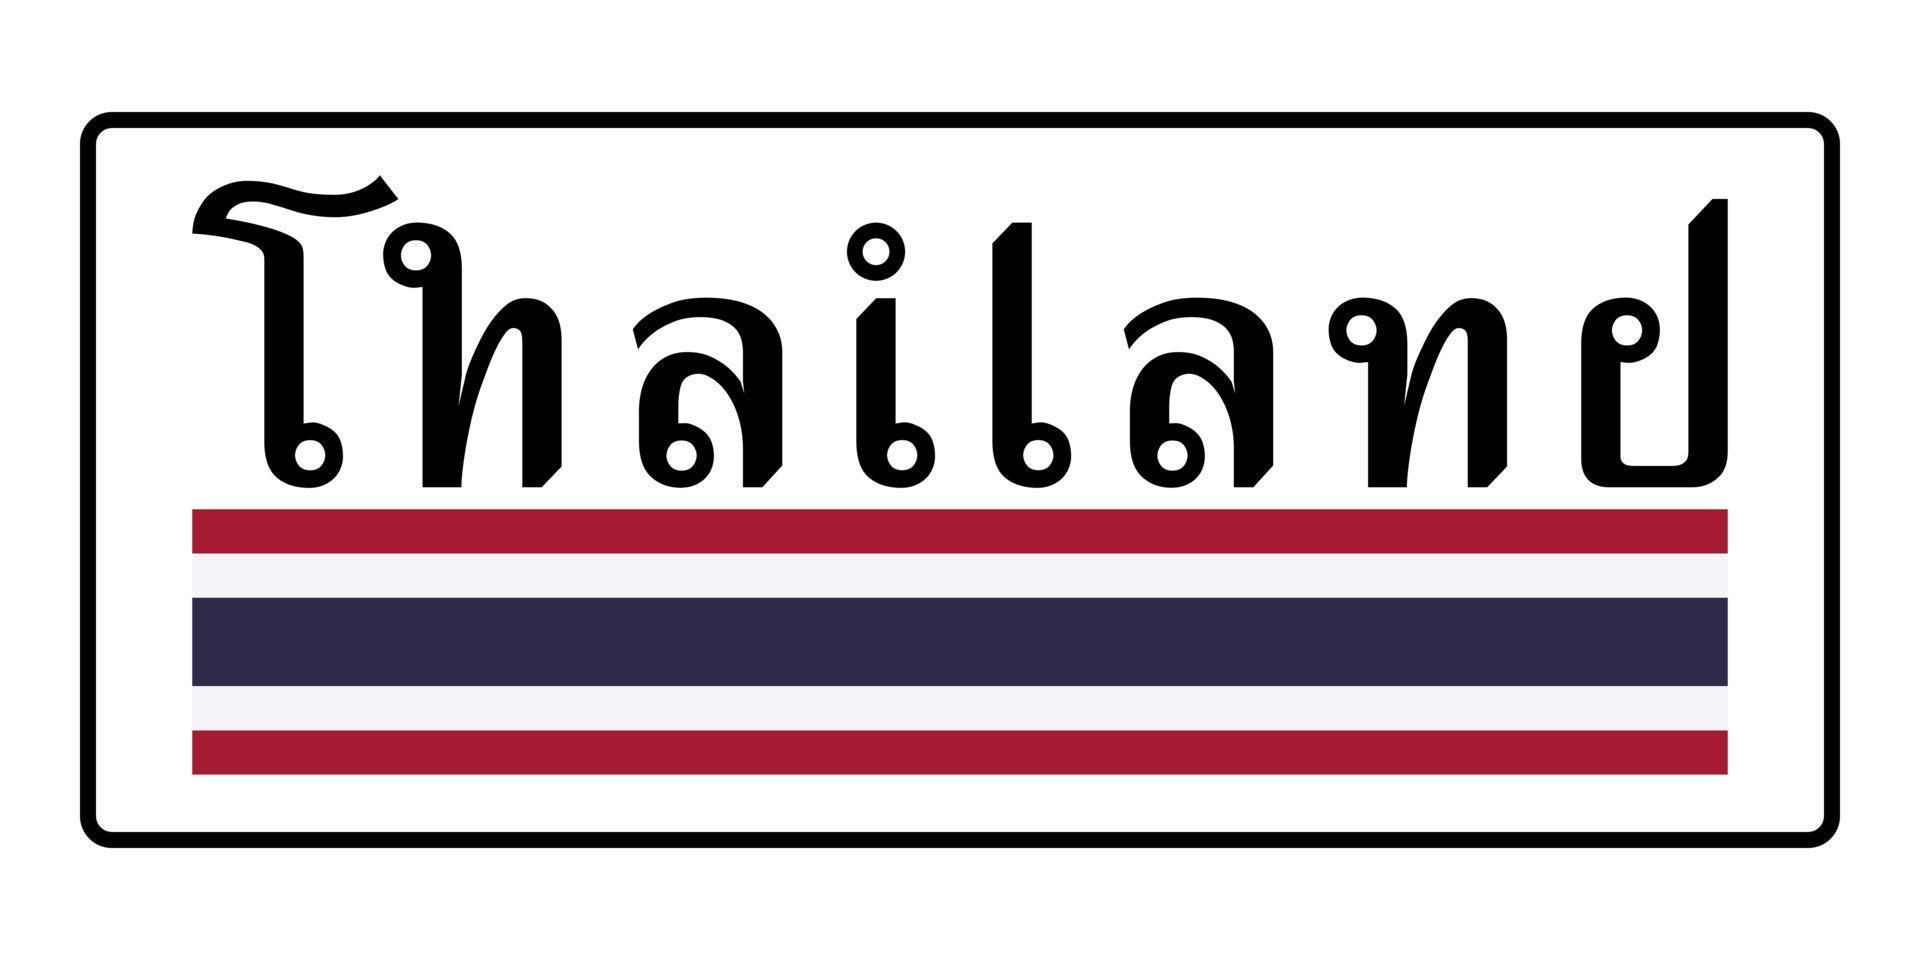 letras tailandesas para la palabra tailandia vector